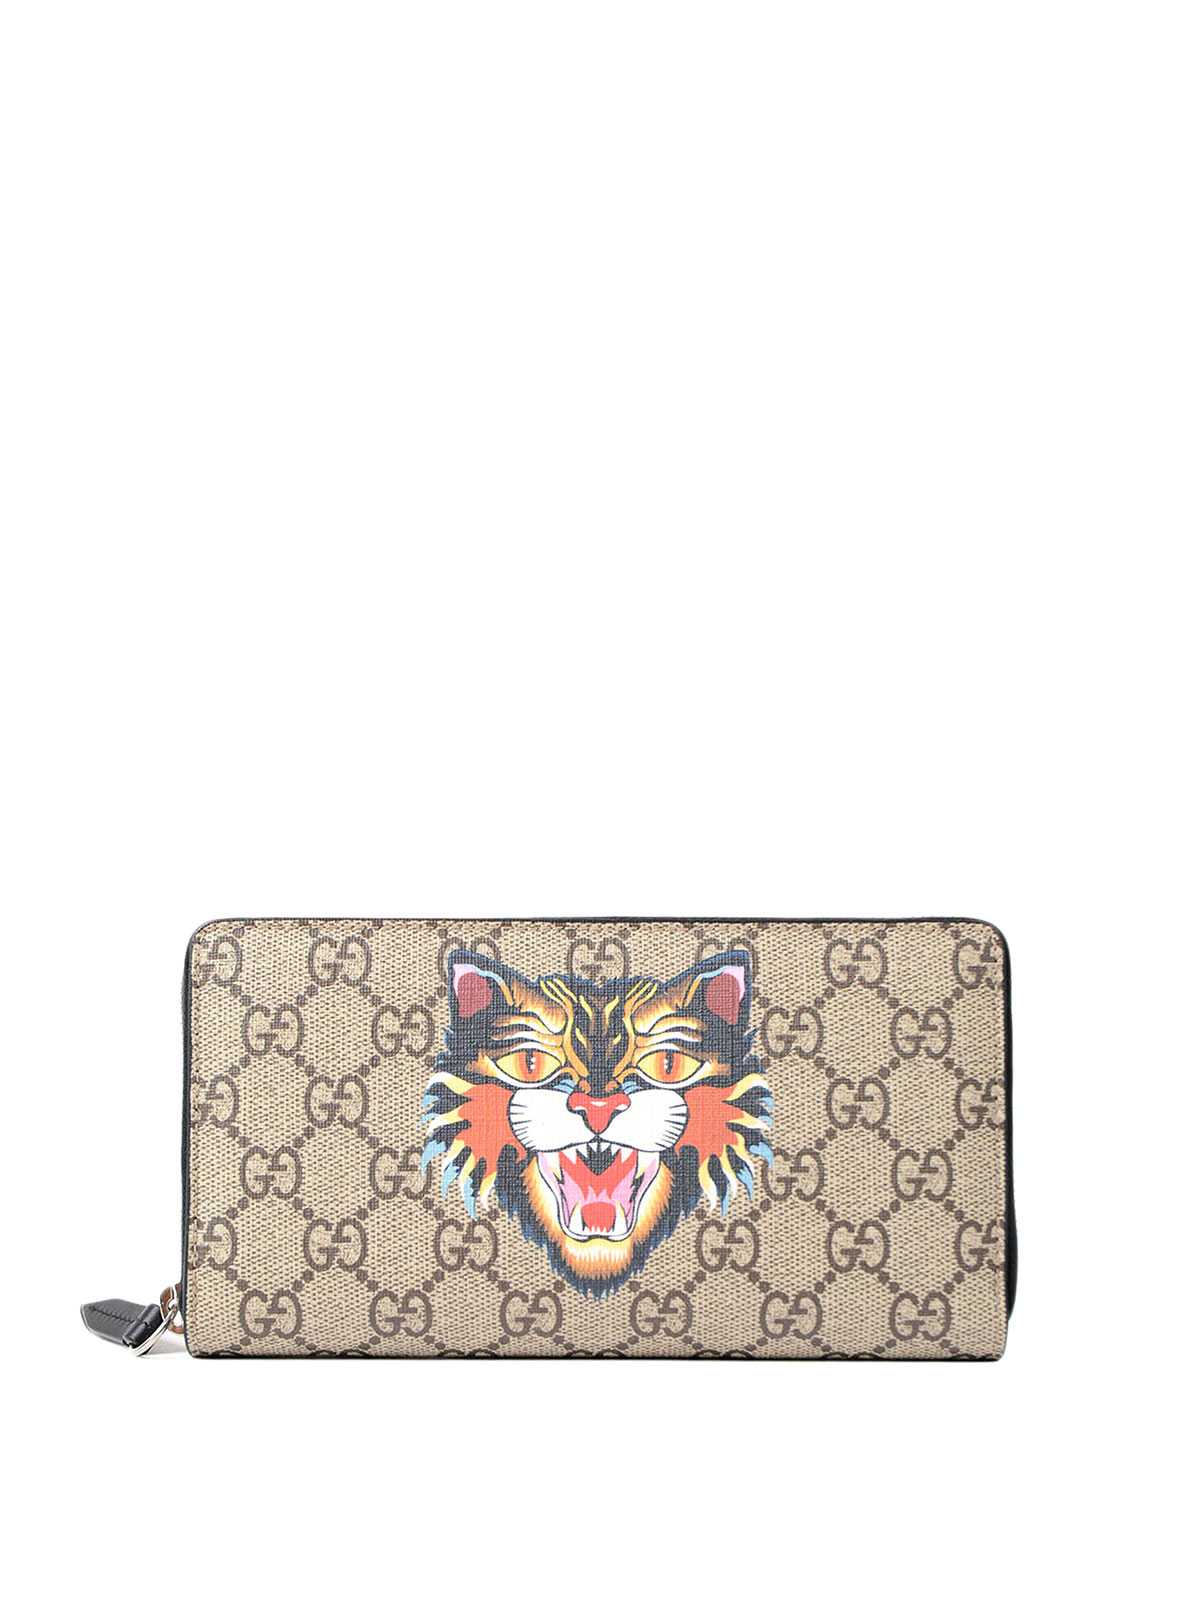 gucci tiger purse